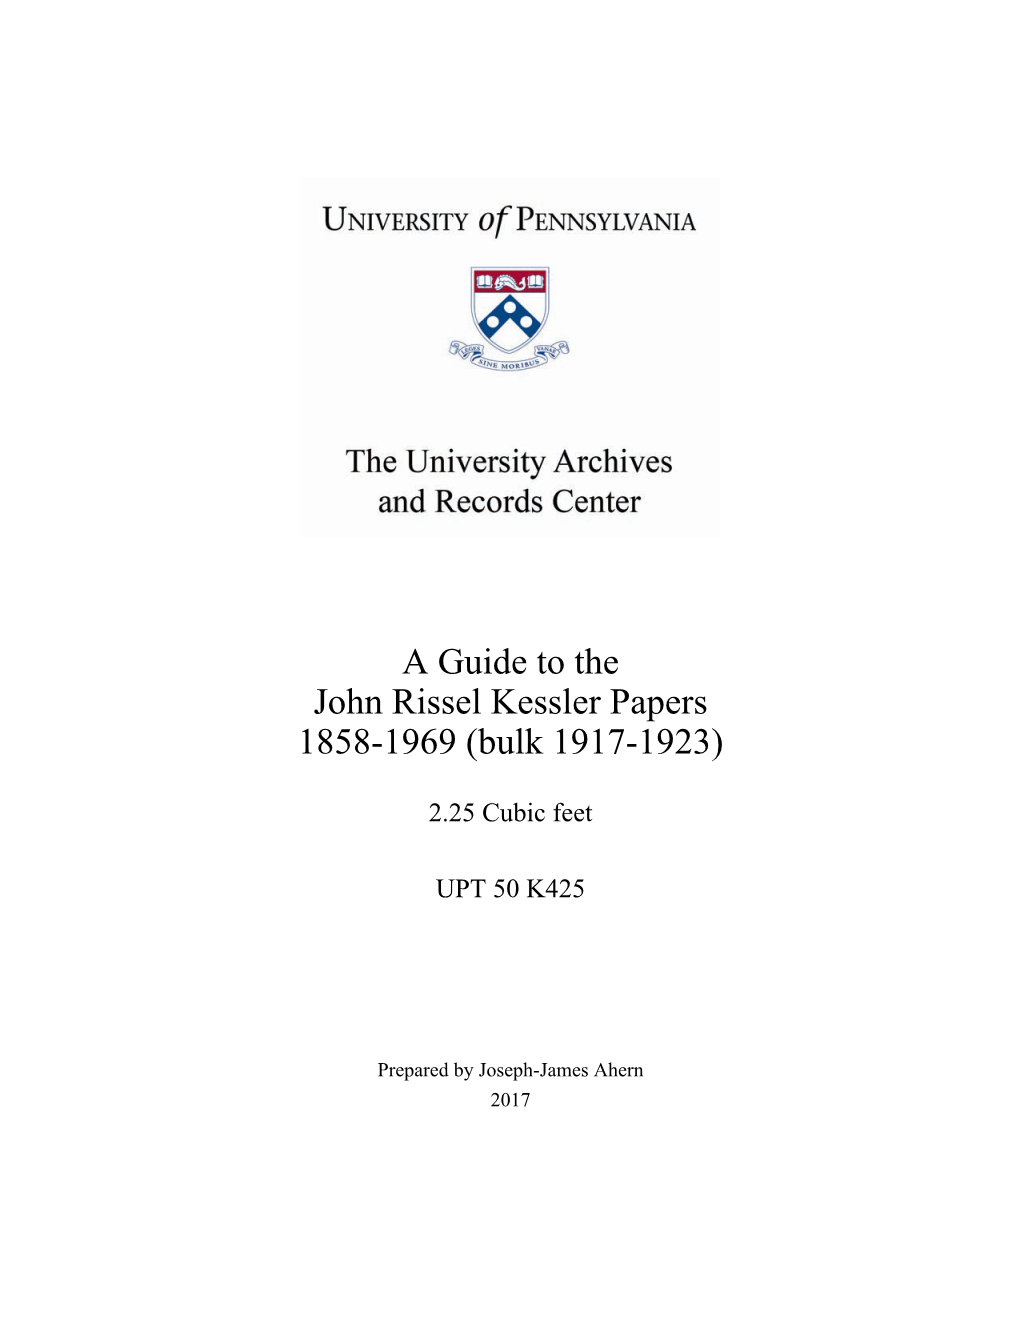 Guide, John Rissel Kessler Papers (UPT 50 K425)